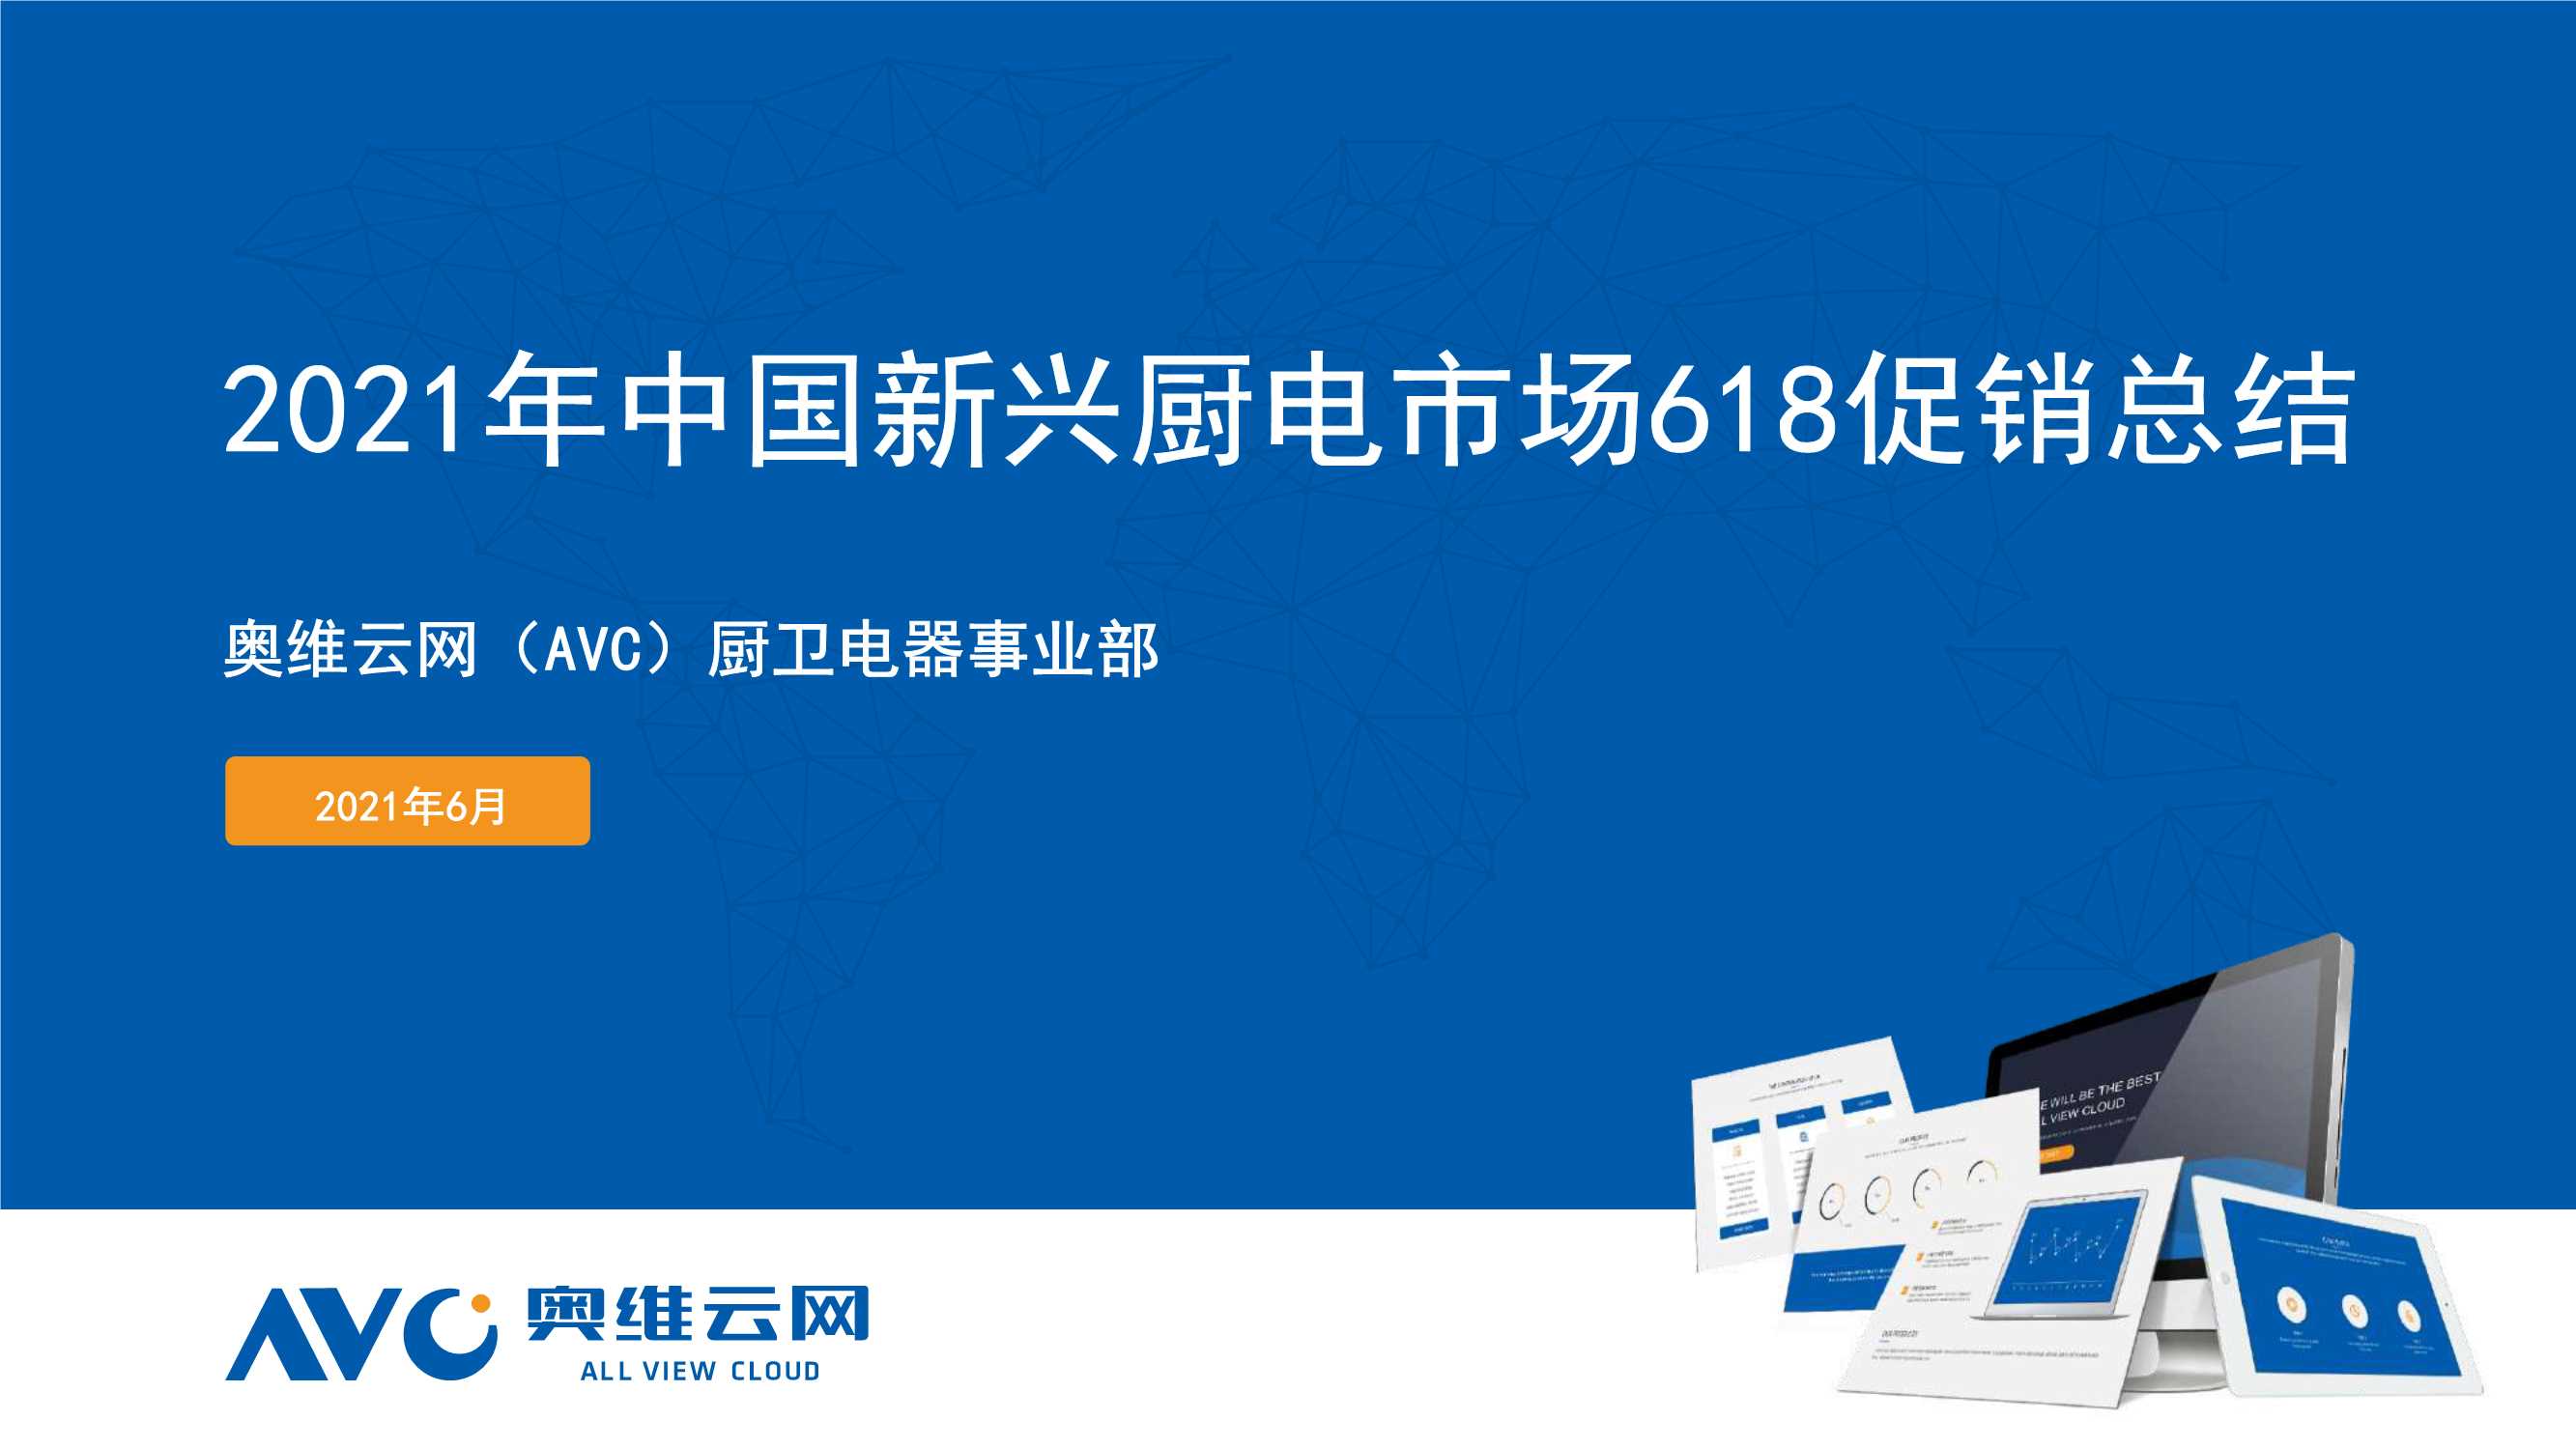 奥维云网-2021年中国新兴厨电市场618促销总结-2021.07-48页